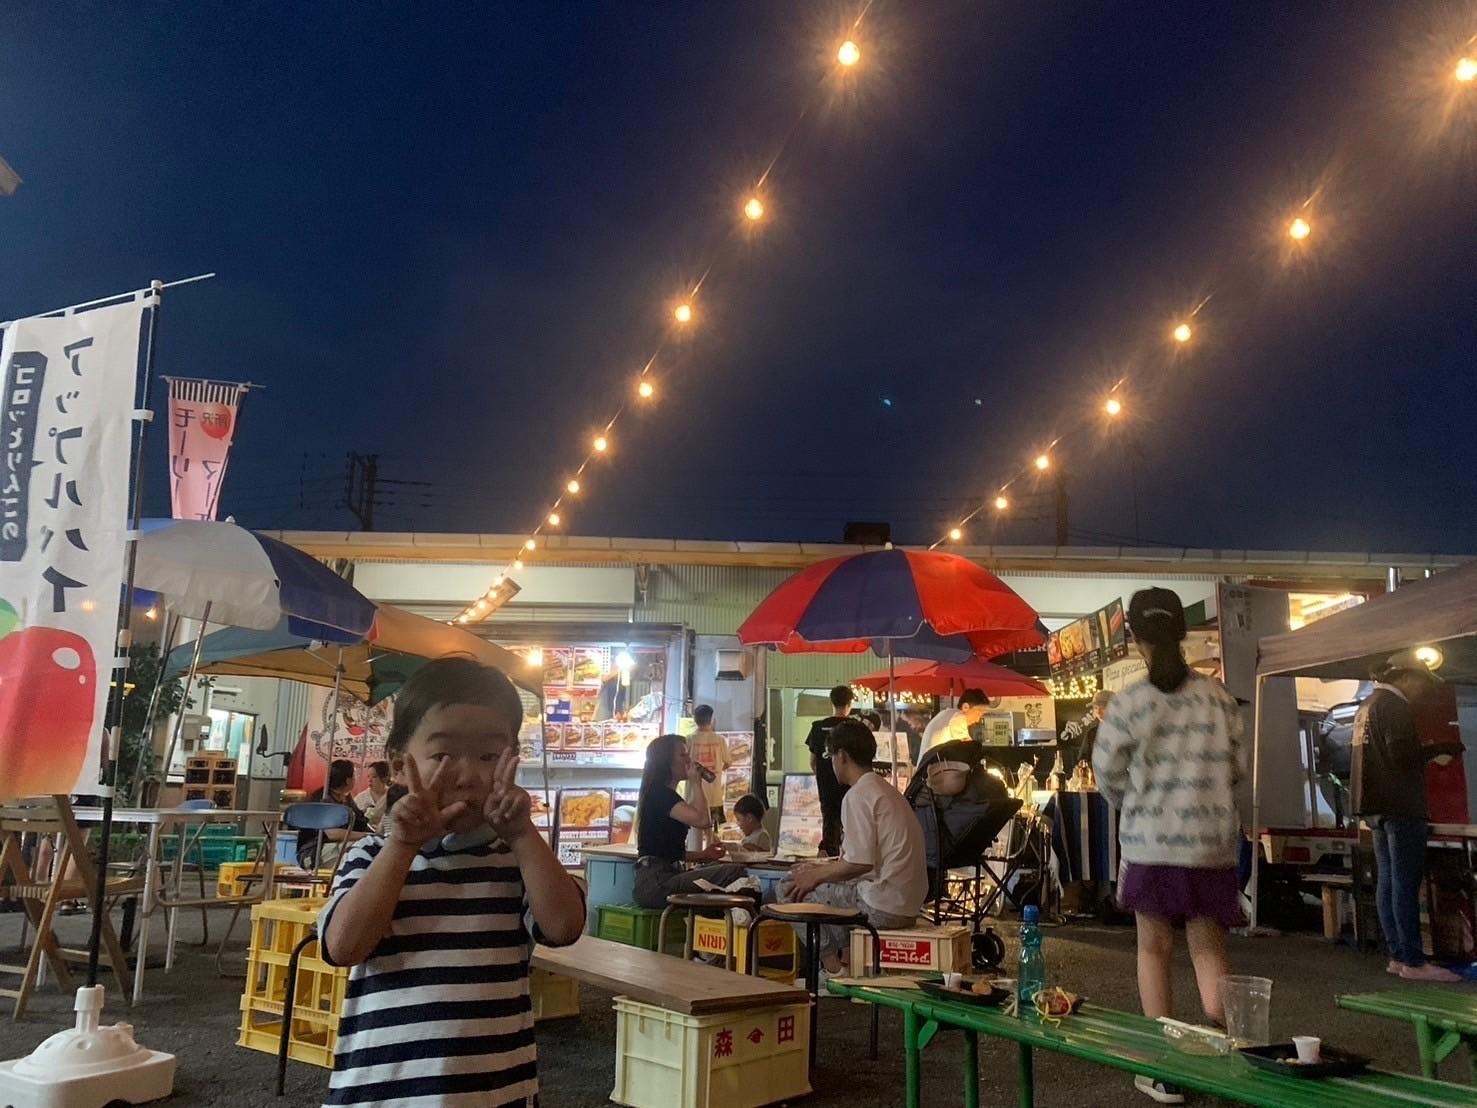 【下安松】「おいしい」「楽しい」があふれるモーリーマーケットの初夏の夜祭り 『モーリー横丁』